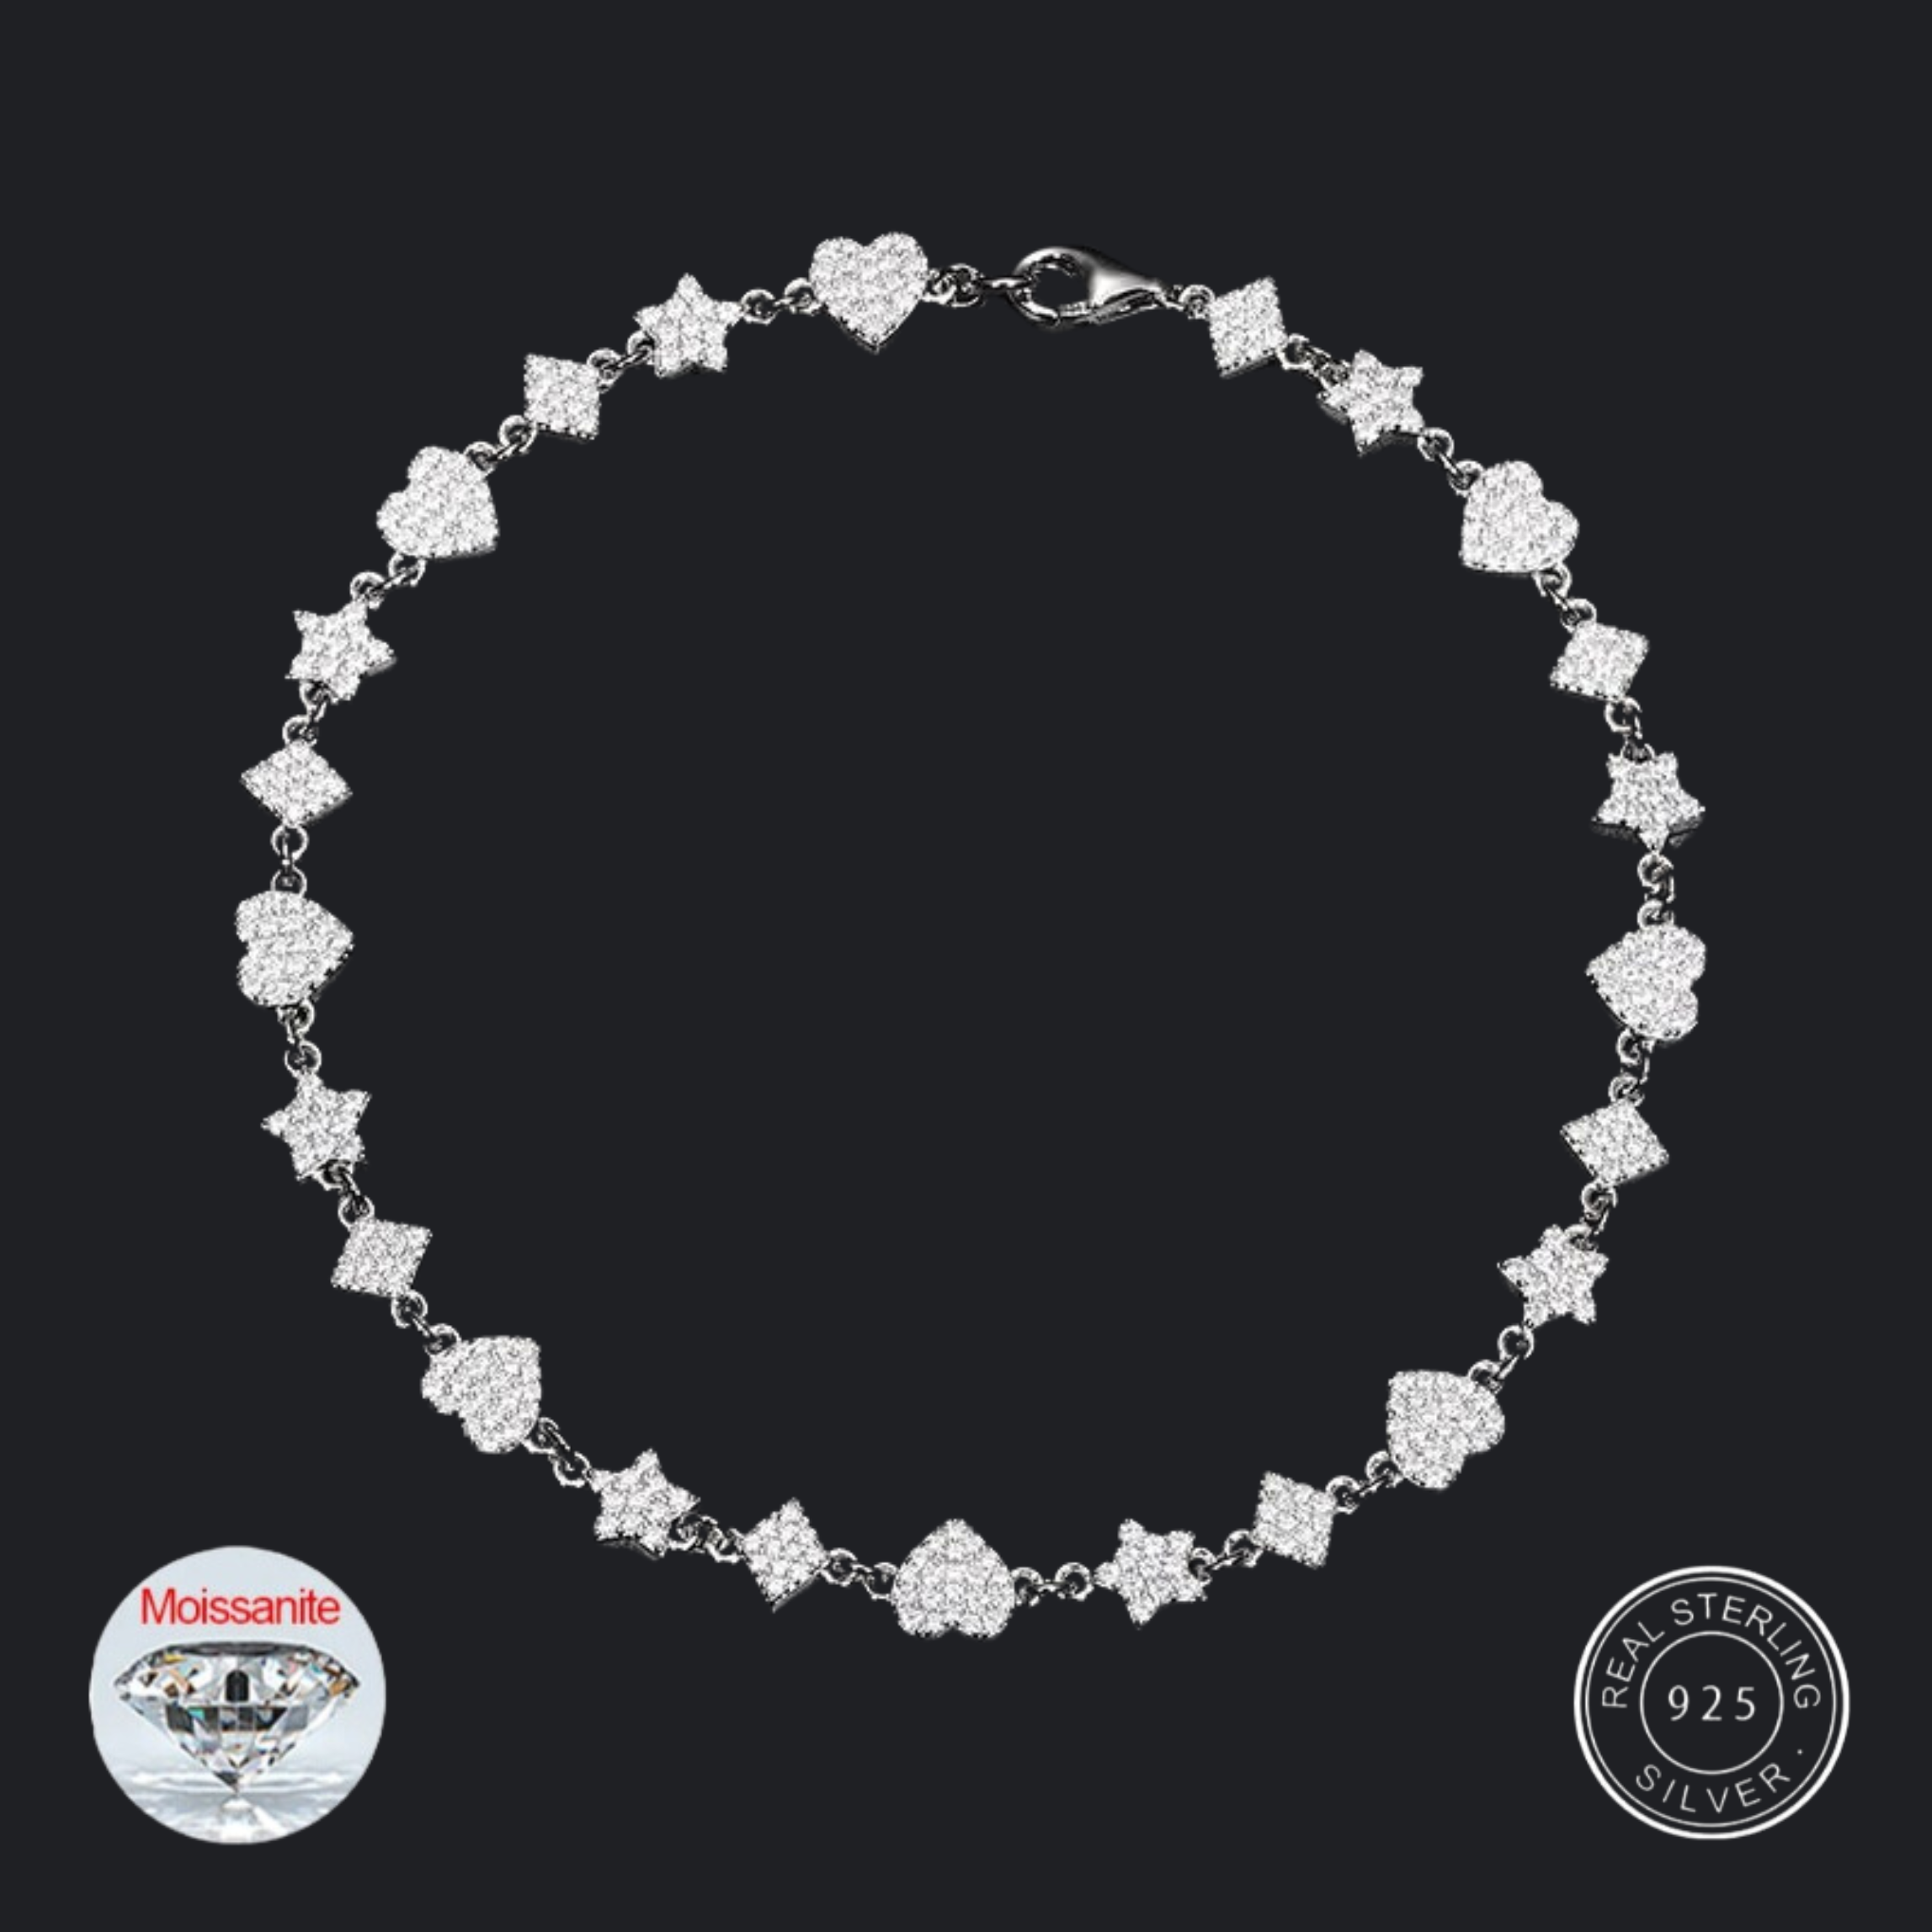 S925 Moissanite Heart-Star Link Diamond Bracelet - 6mm